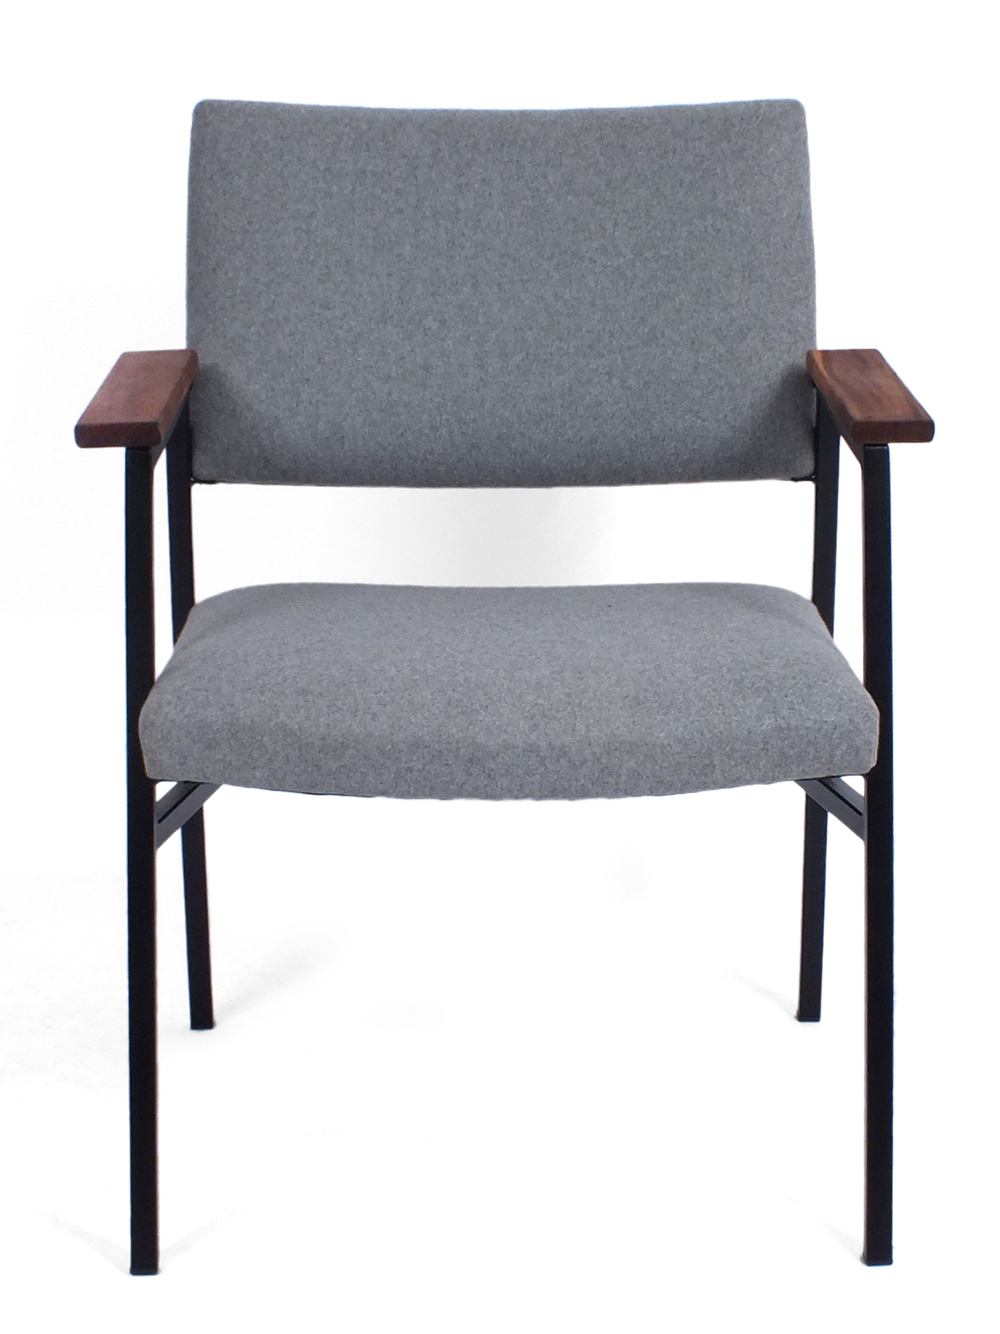 Modernistic armchair Avanti / Gebroeders van der Stroom - VAEN